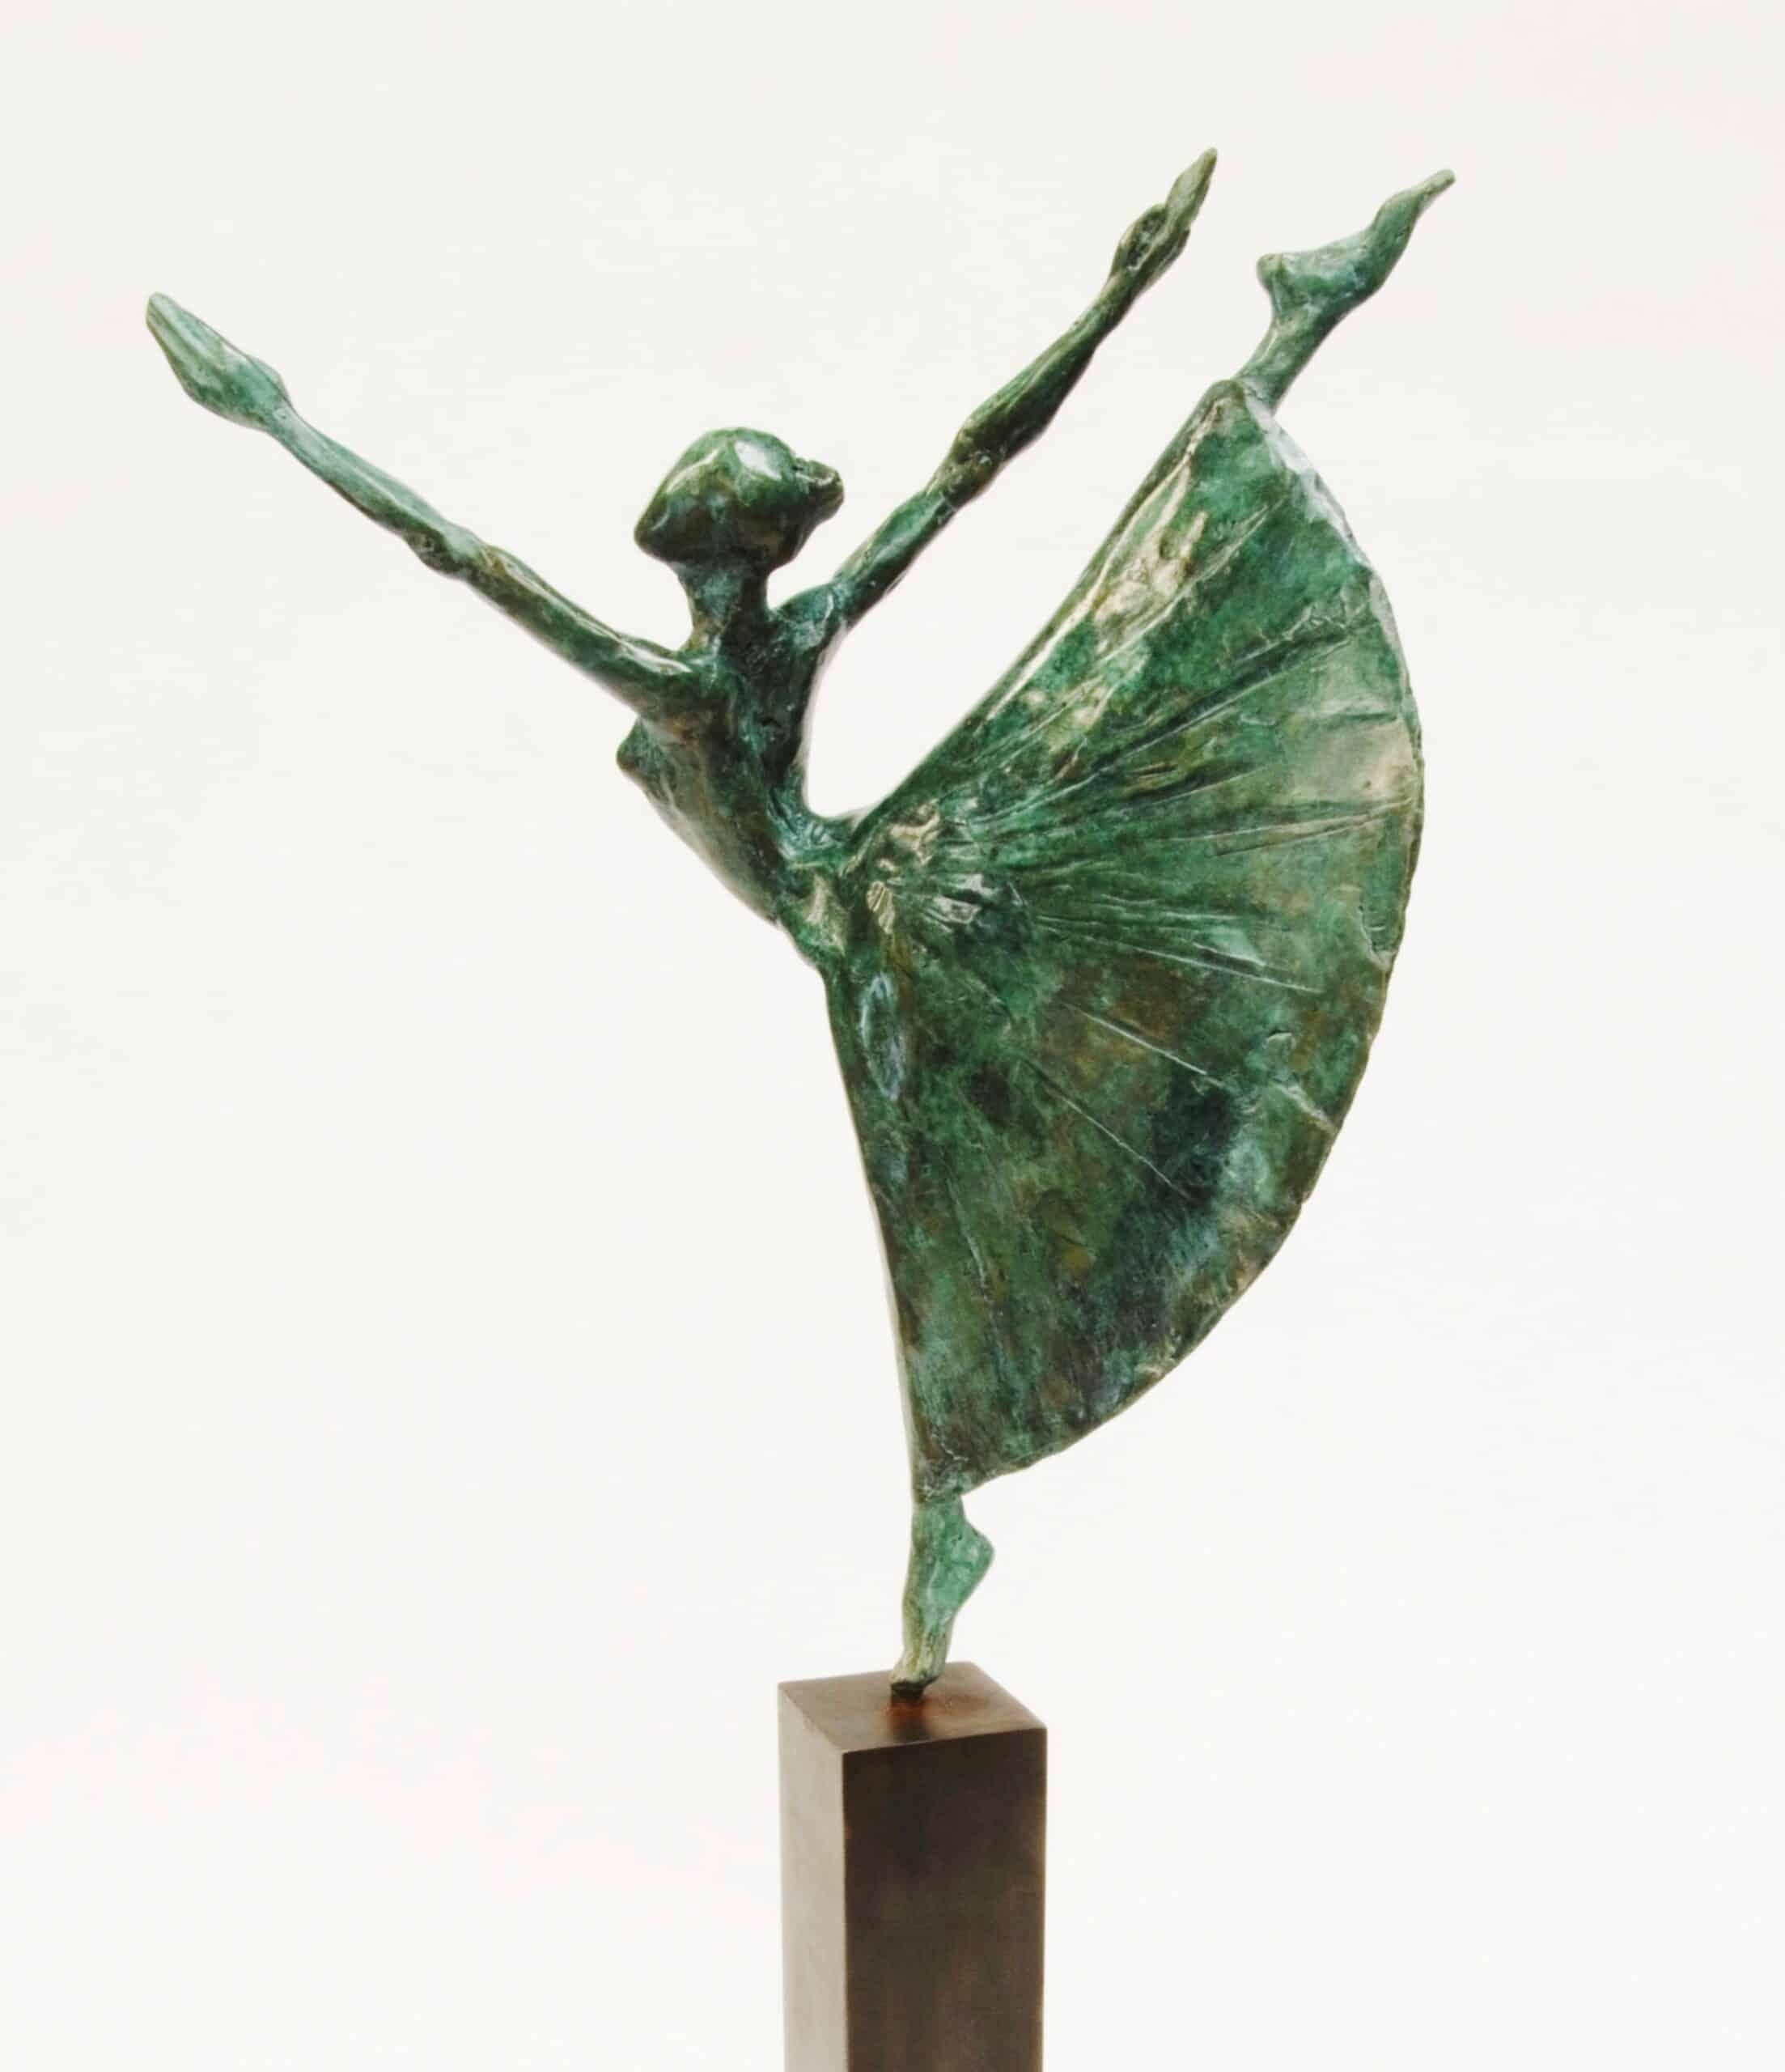 Dancer With Long Tutu est une sculpture en bronze de l'artiste contemporain Yann Guillon, dont les dimensions sont de 25 × 15 × 8 cm (9,8 × 5,9 × 3,1 in). Hauteur de la sculpture avec la base en métal : 45 cm (17,7 in). 
La sculpture est signée et